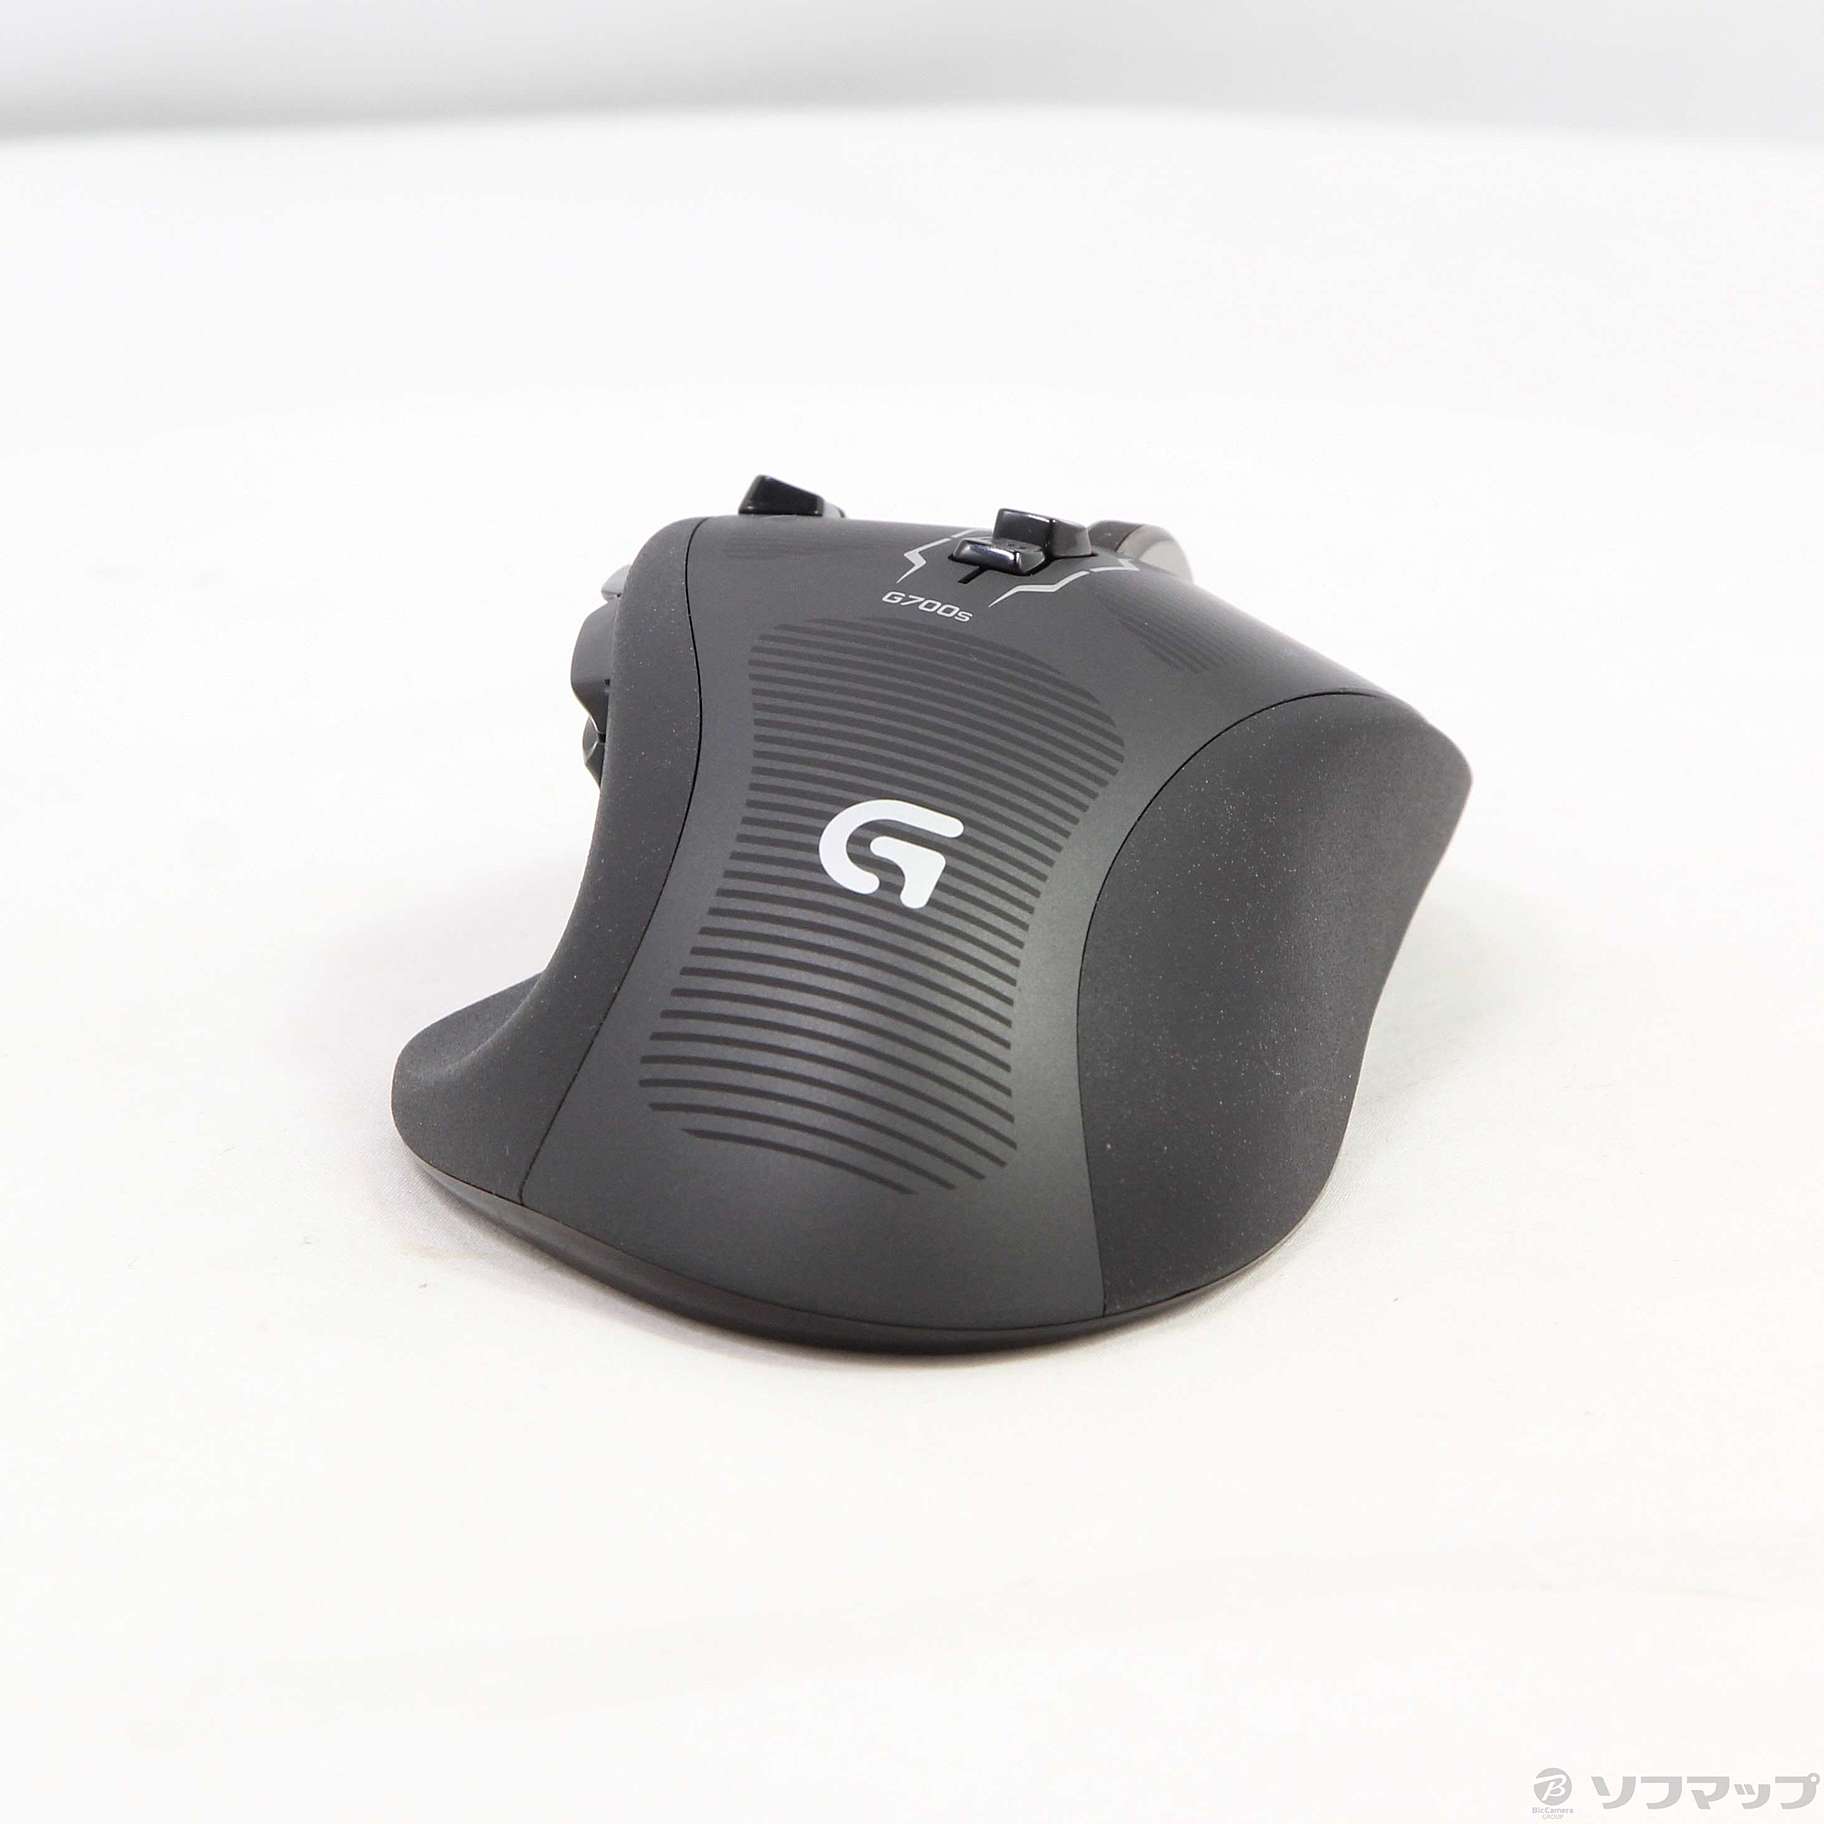 中古】G700s Rechargeable Gaming Mouse ブラック [2133042377941